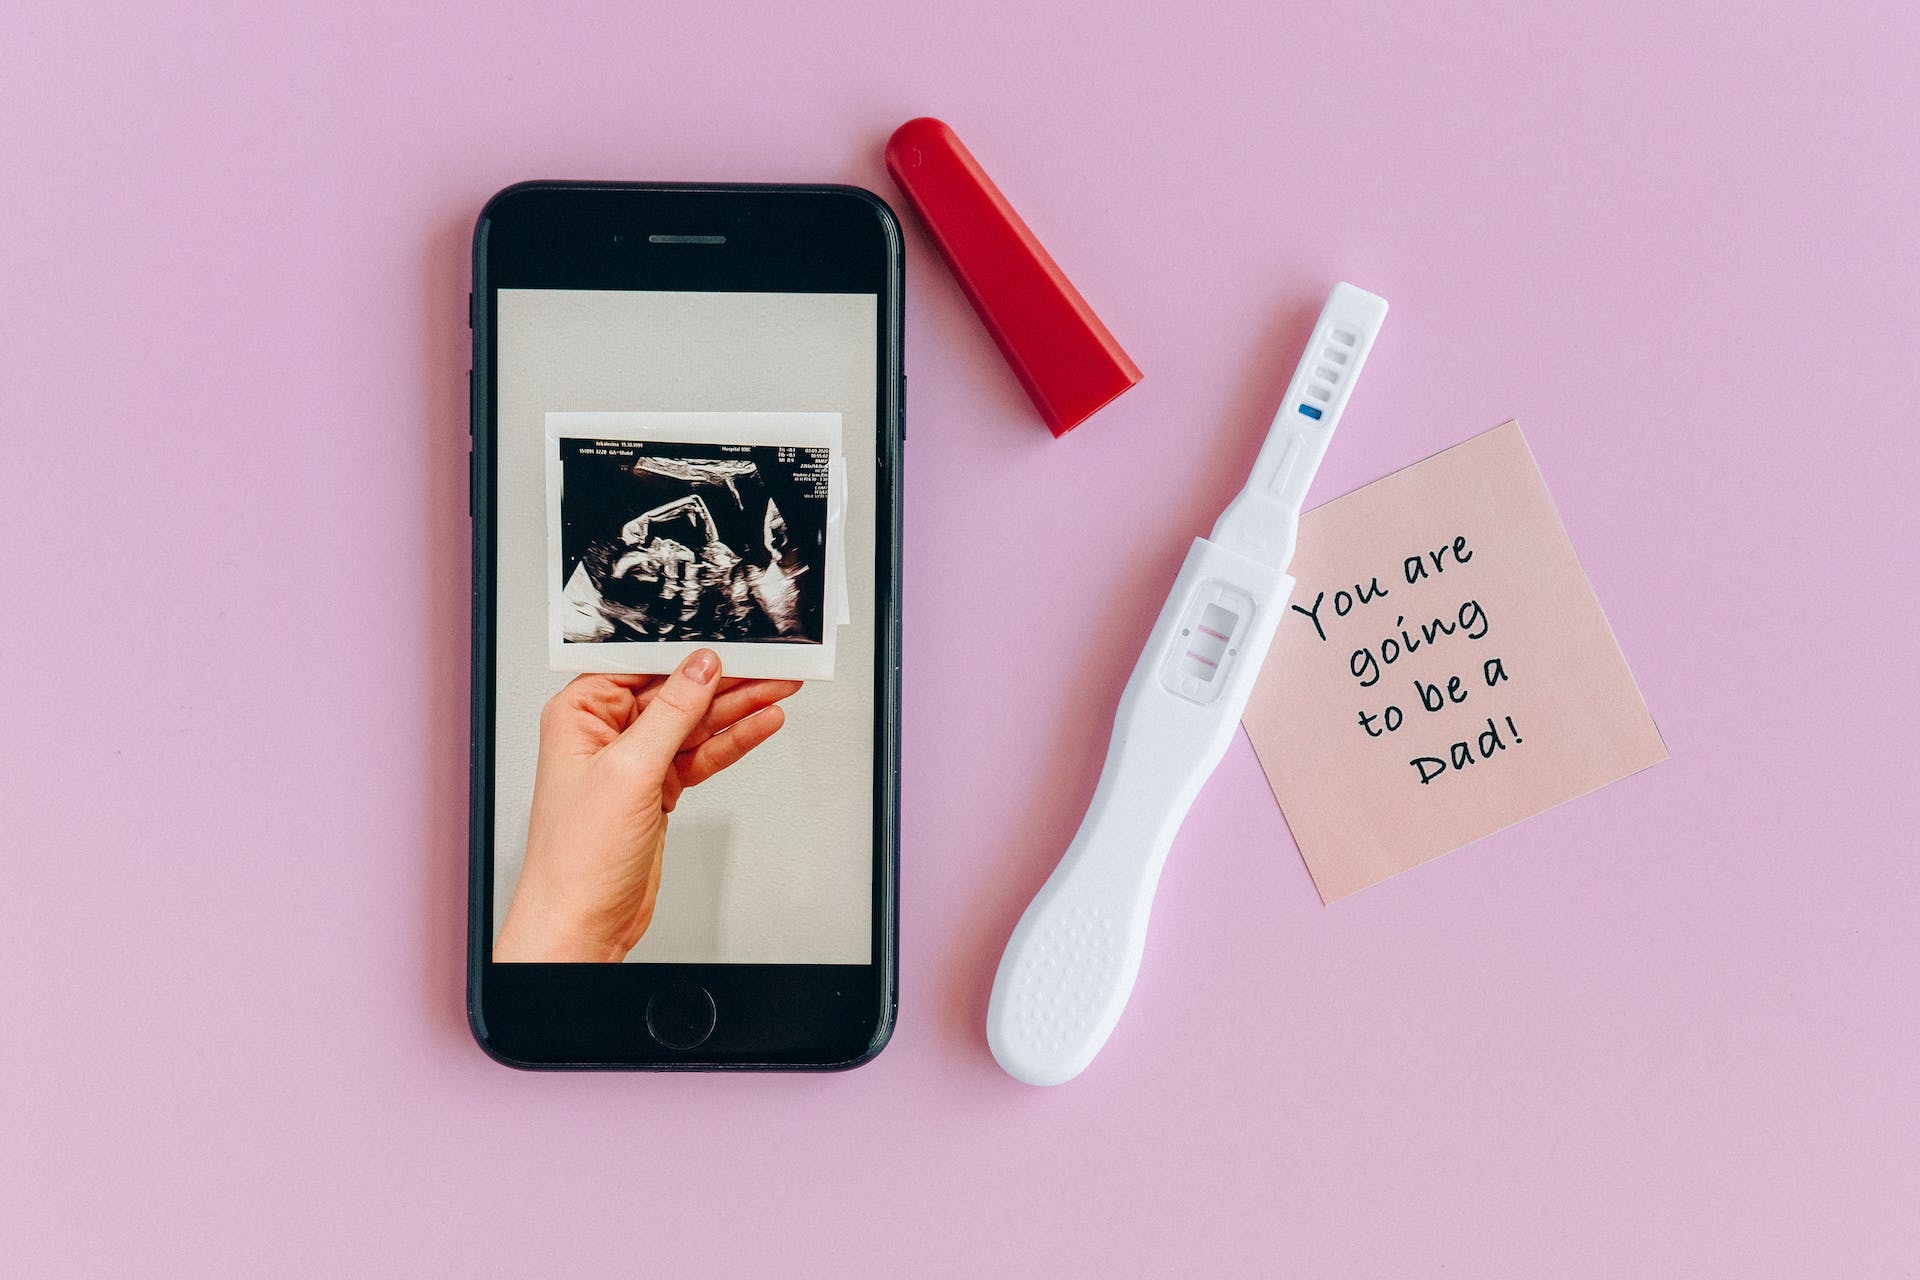 Test de grossesse positif et échographie. | Source : Pexels